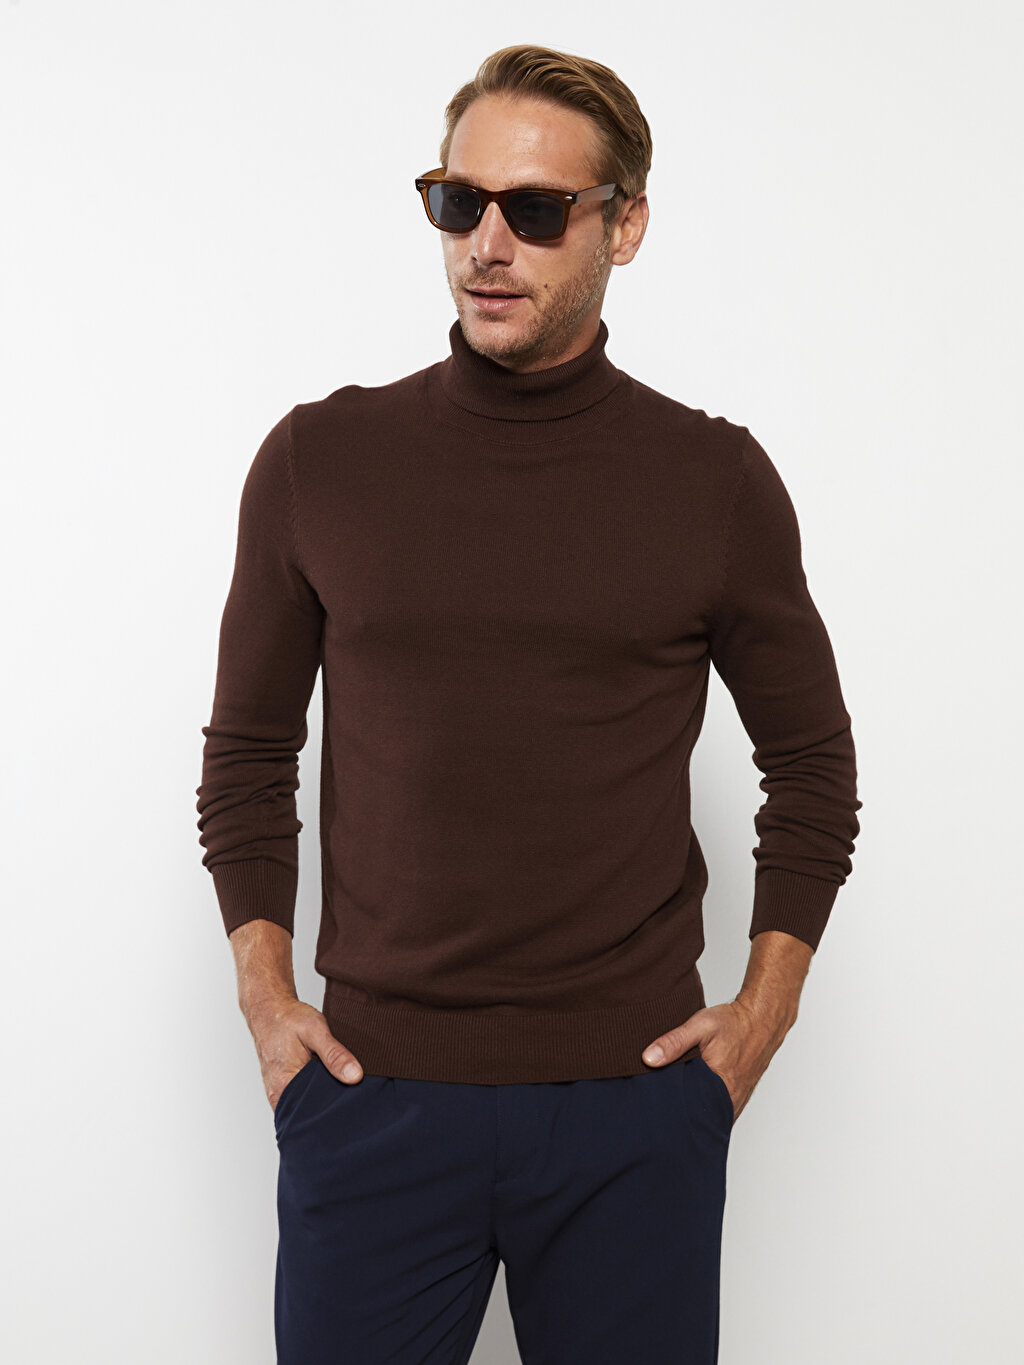 Turtleneck Long Sleeve Men's Tricot Sweater -W20704Z8-SFT - W20704Z8-SFT -  LC Waikiki